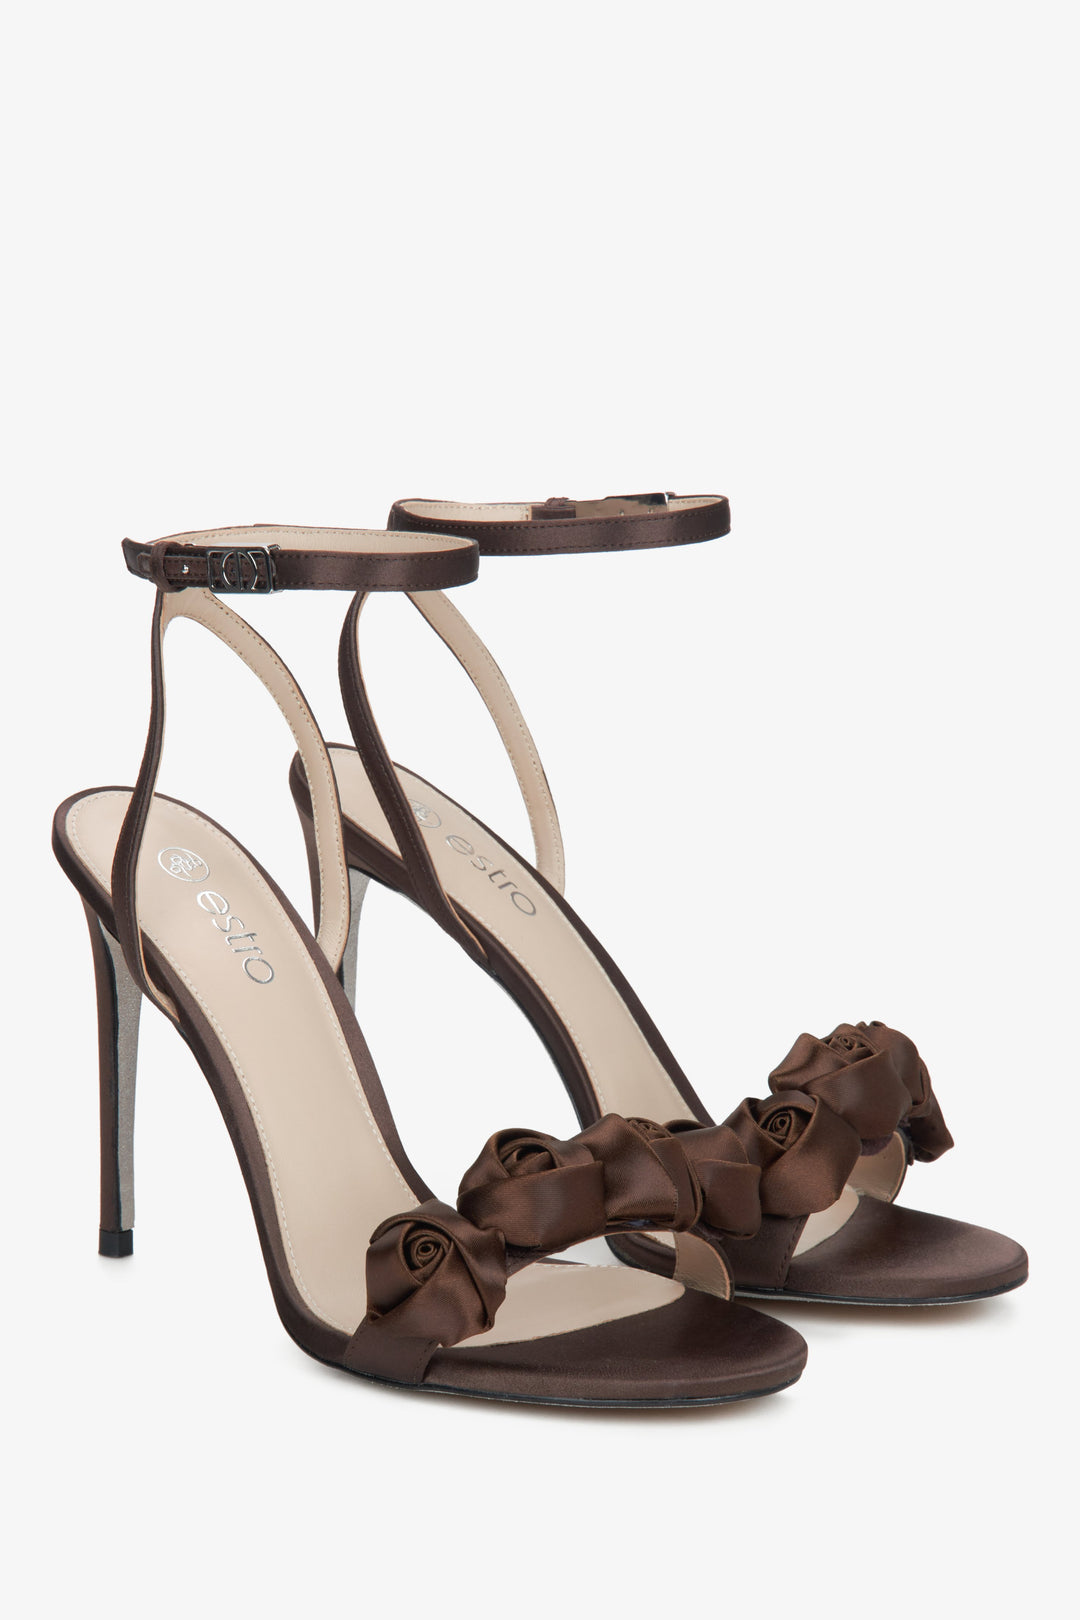 Women's dark brown high heel sandals by Estro.